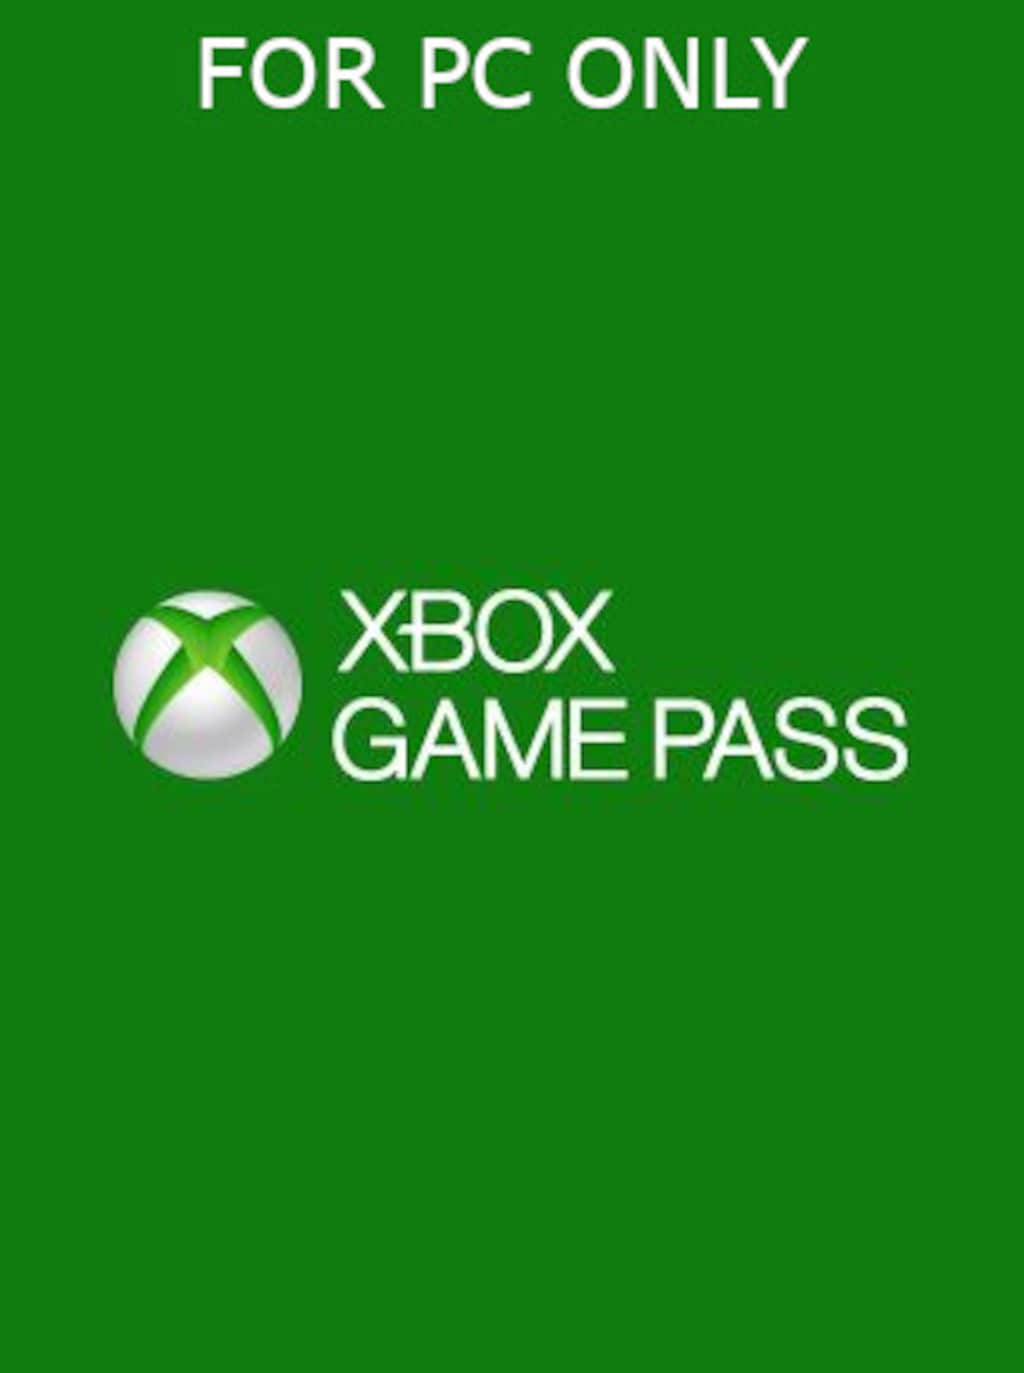 XBOX Game Pass para PC por 3 Meses, Microsoft - Código Digital